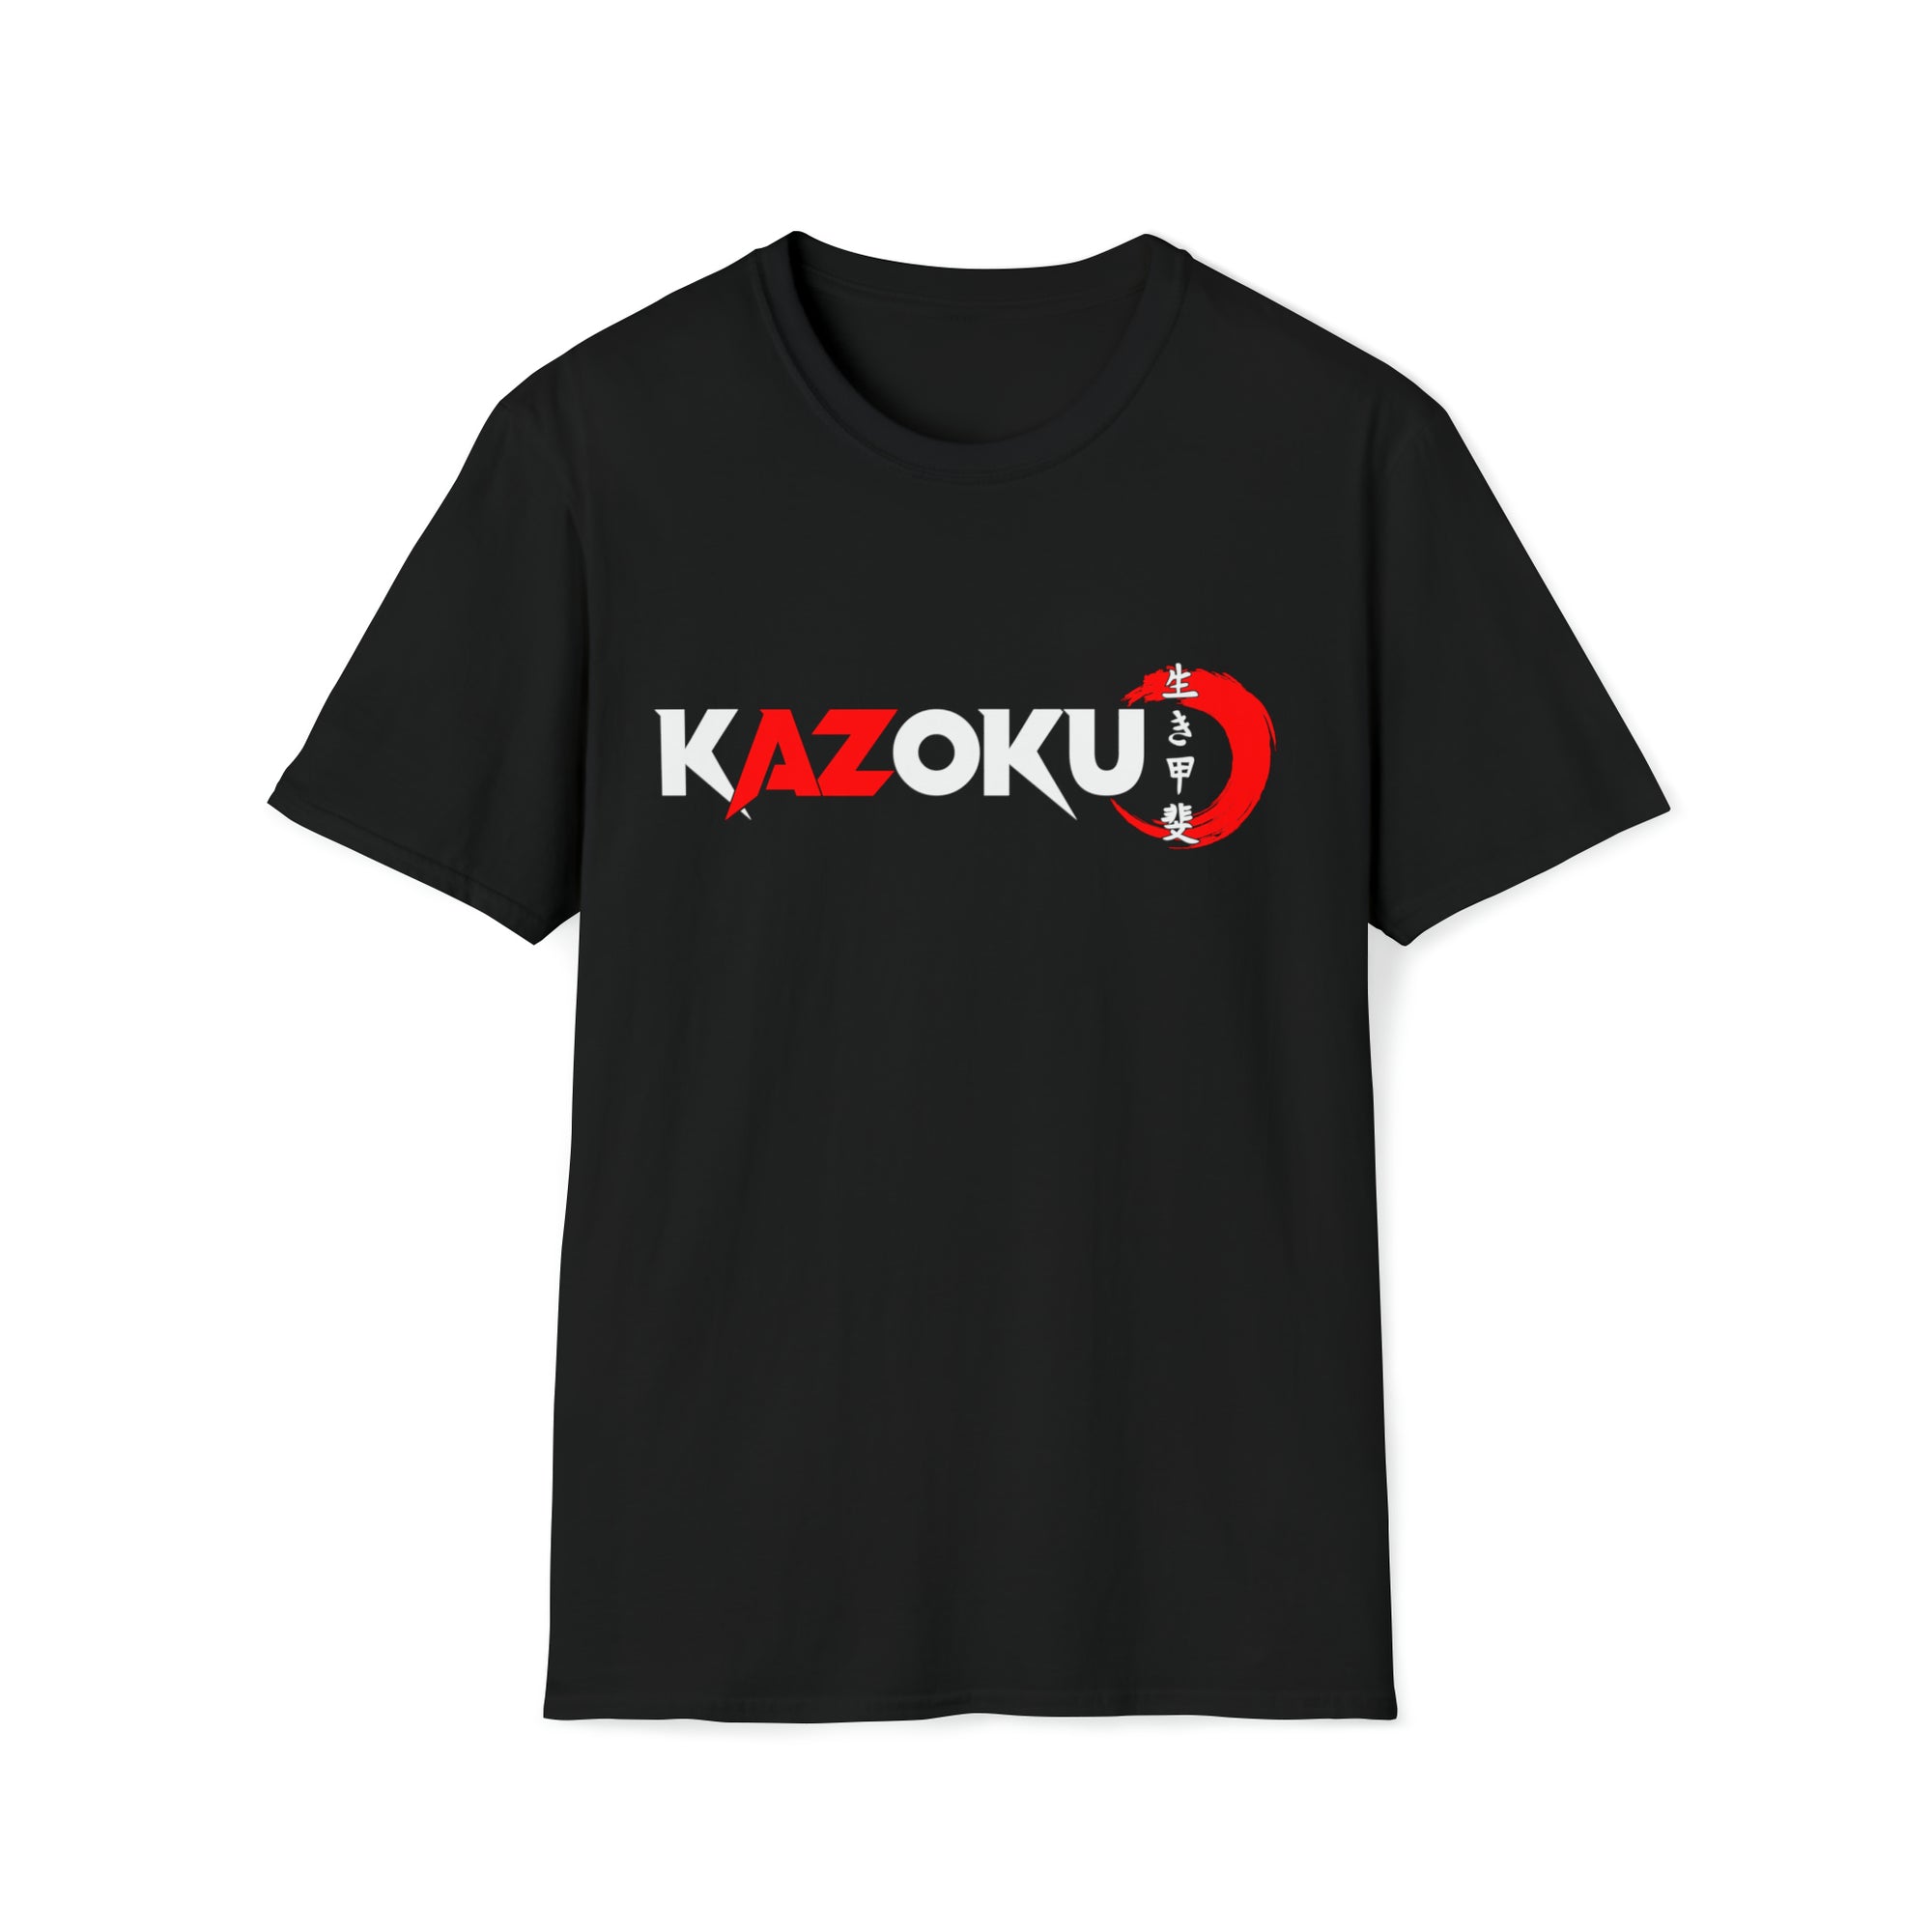 Kazoku 3 shirt